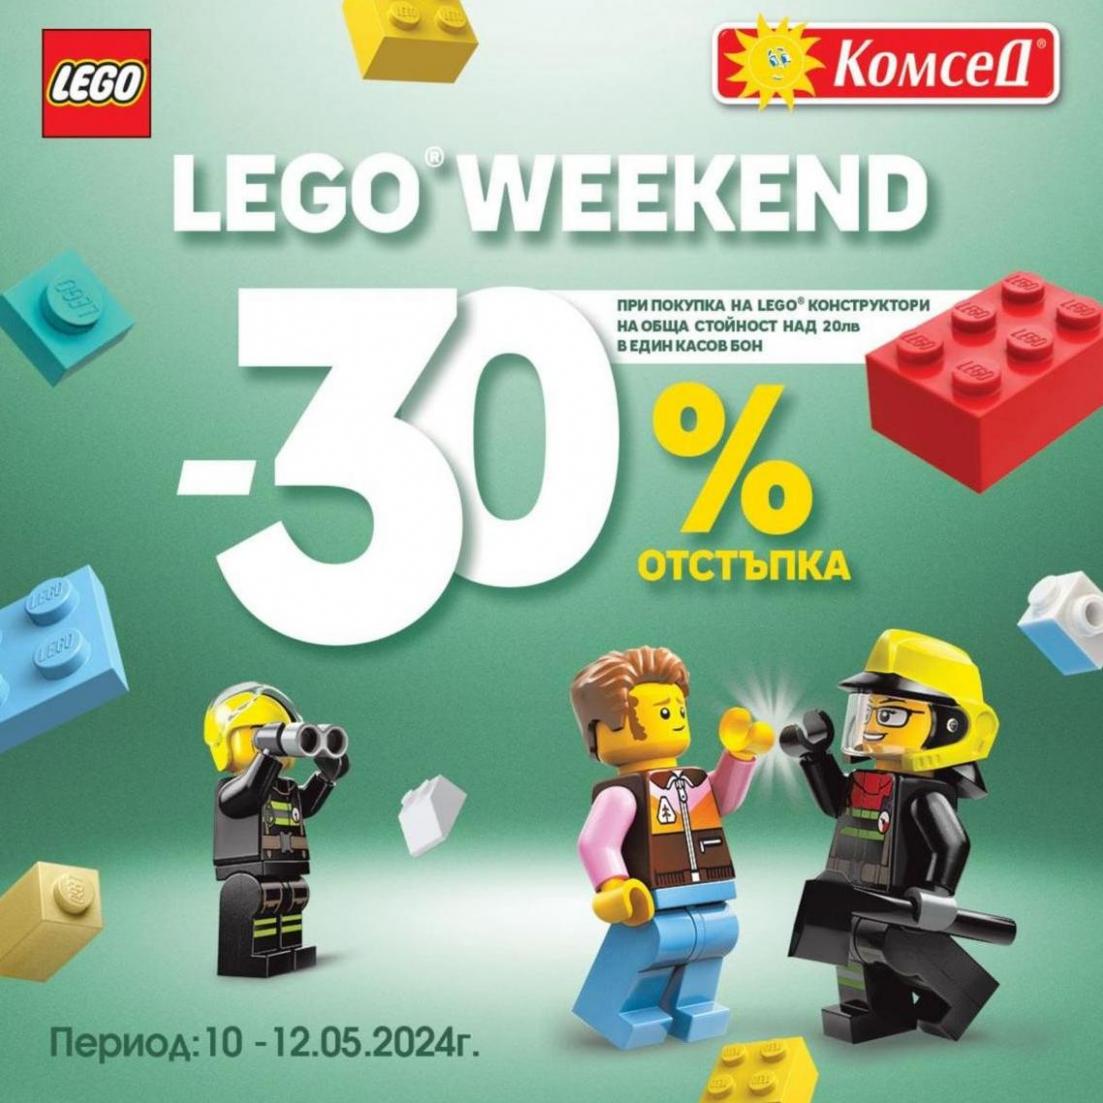 Lego Weekend -30% отстъпка. Комсед (2024-05-12-2024-05-12)